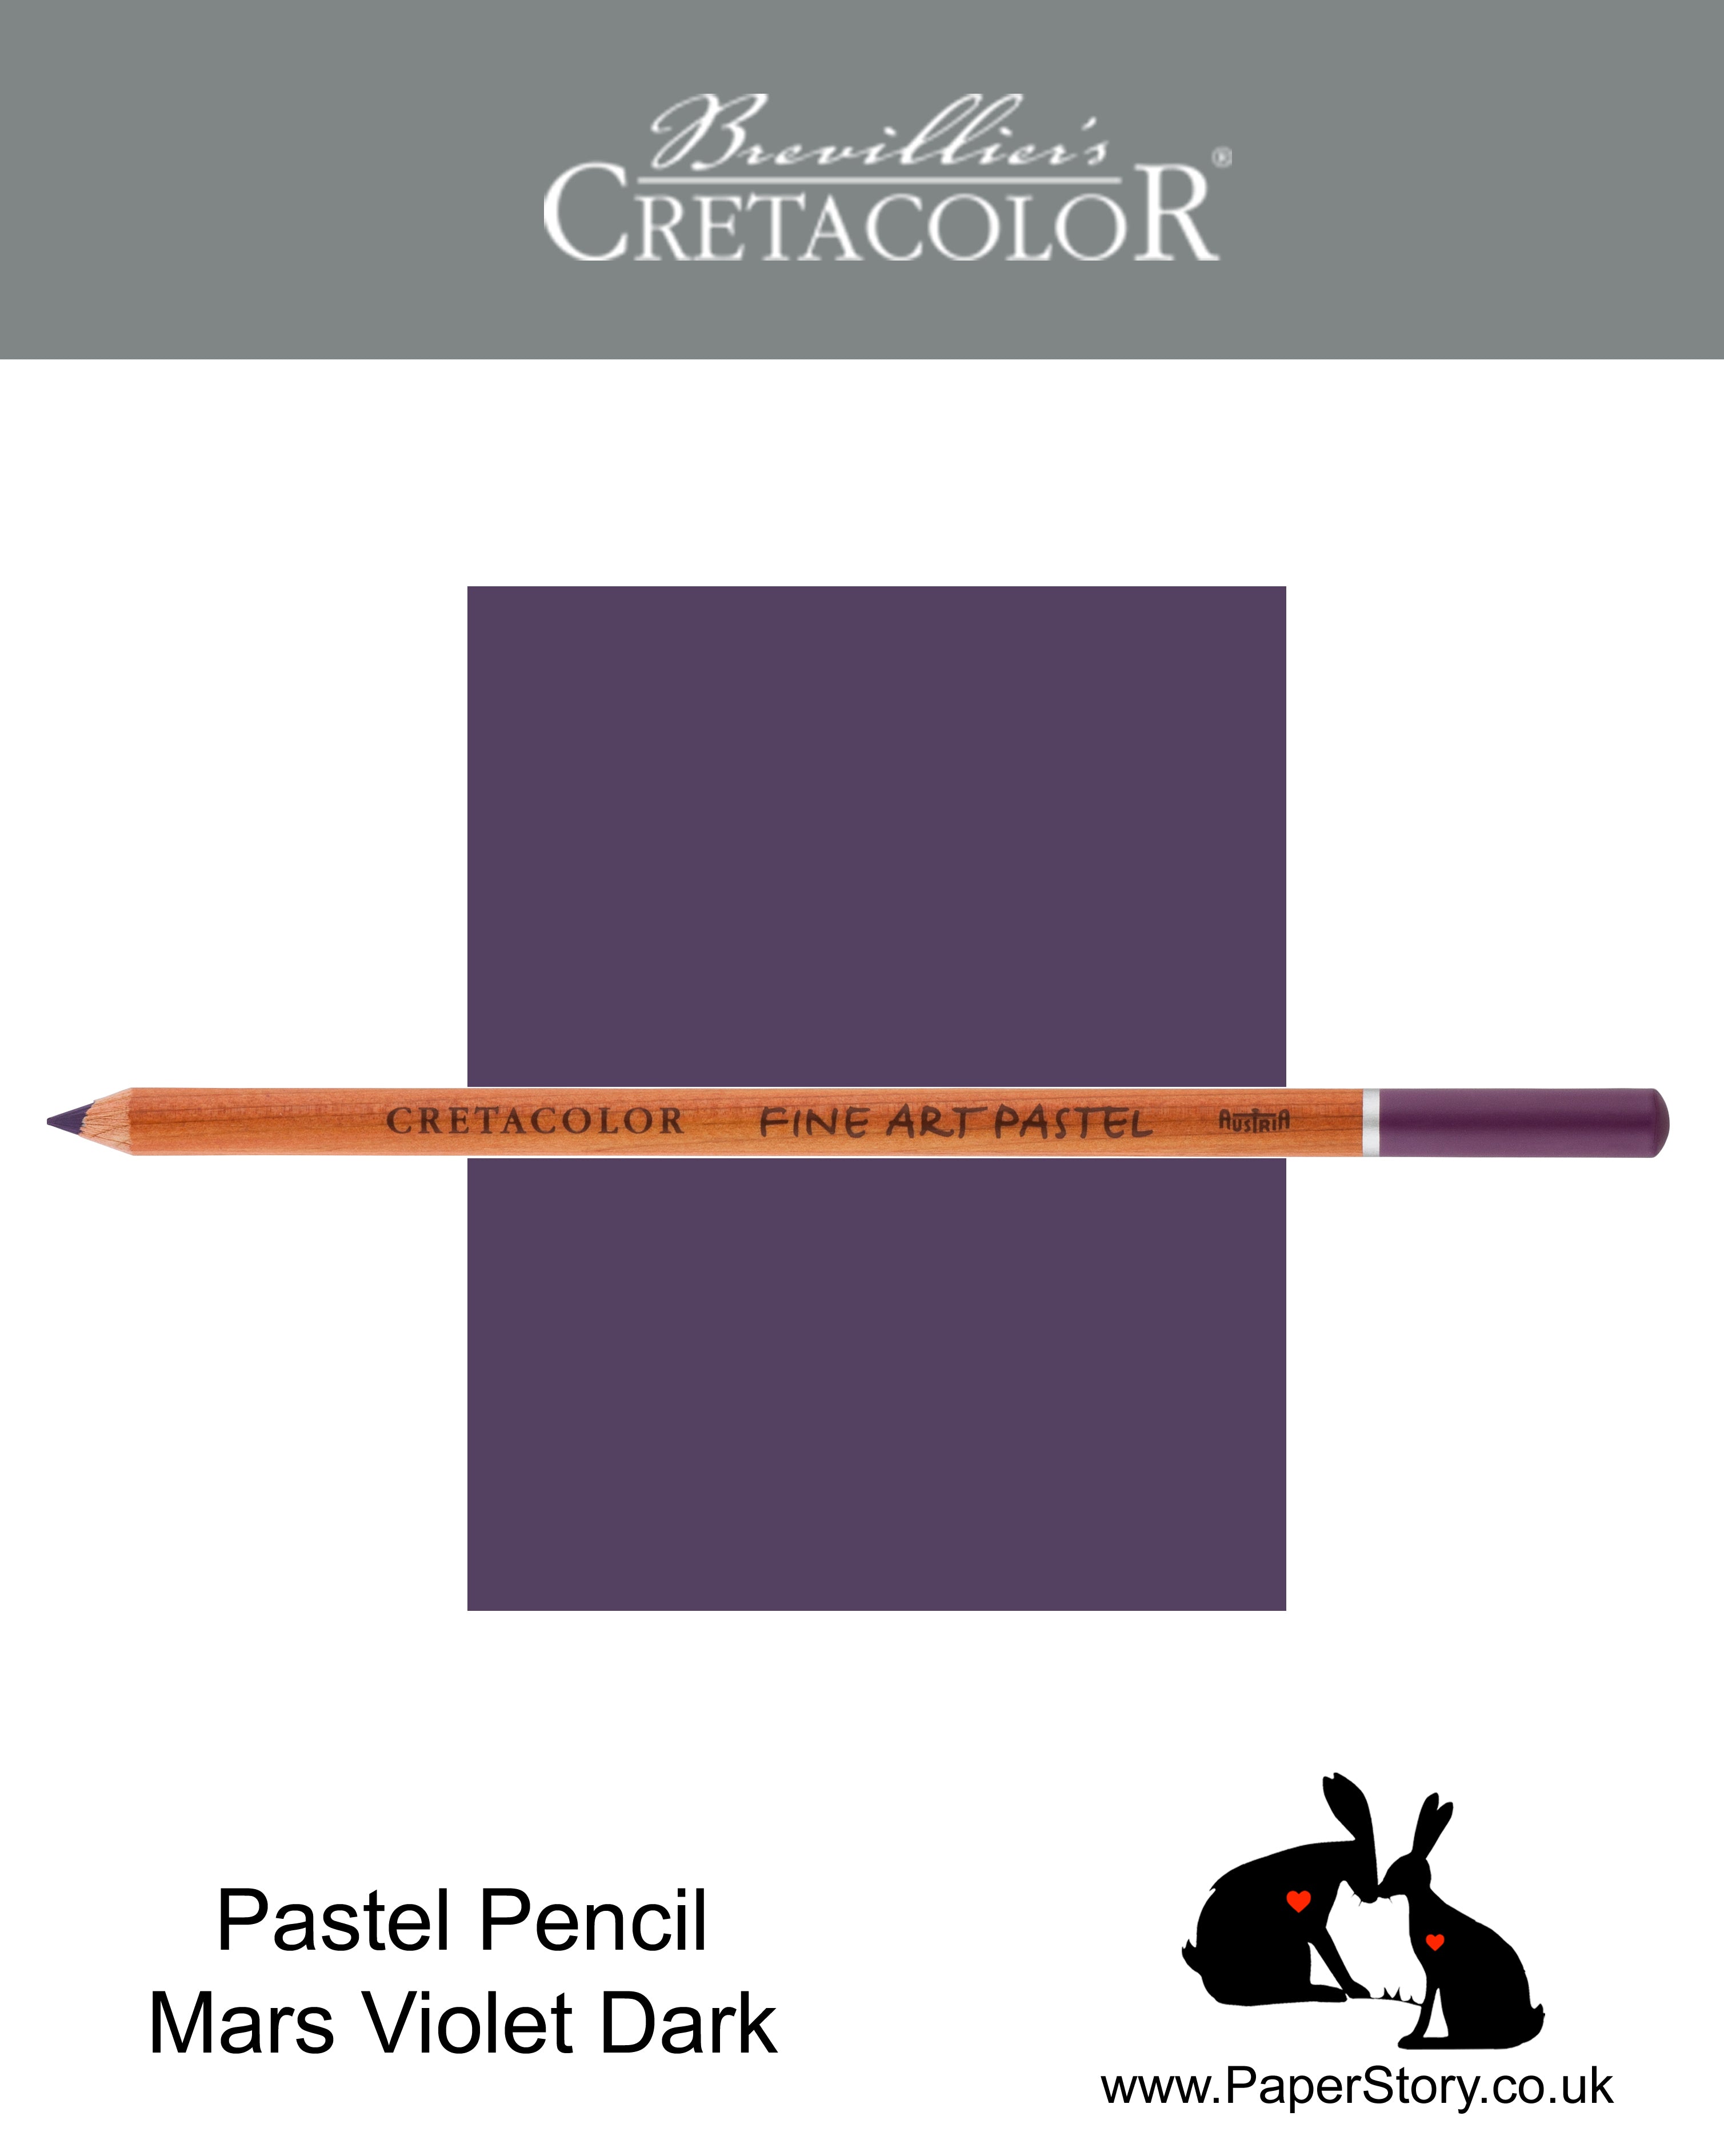 Cretacolor 471 40 Artists Pastel Pencil Mars Violet Dark